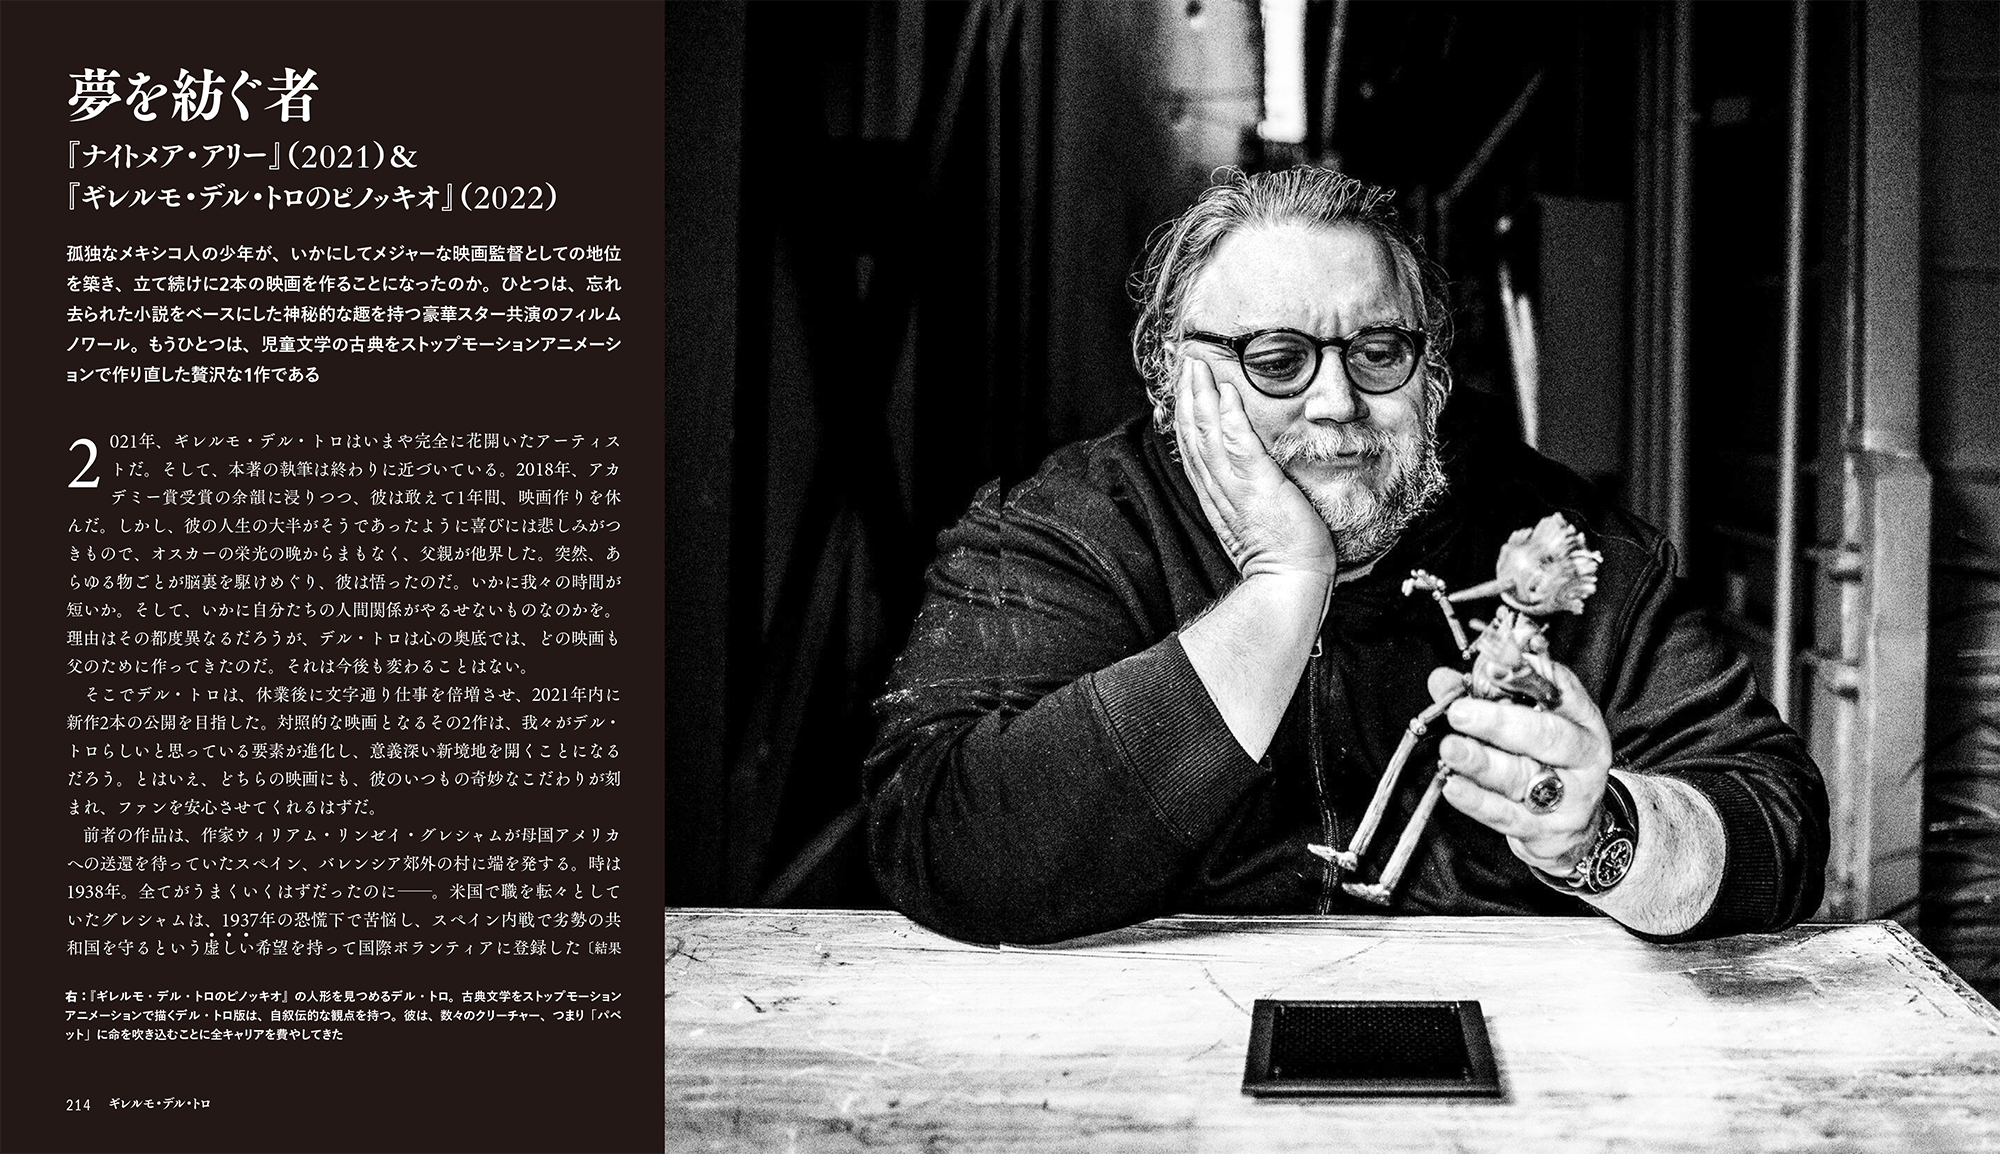 巨匠ギレルモ・デル・トロの人生と全ての作品を解き明かす評伝「ギレルモ・デル・トロ モンスターと結ばれた男」3月11日に発売 - WEEKEND  CINEMA